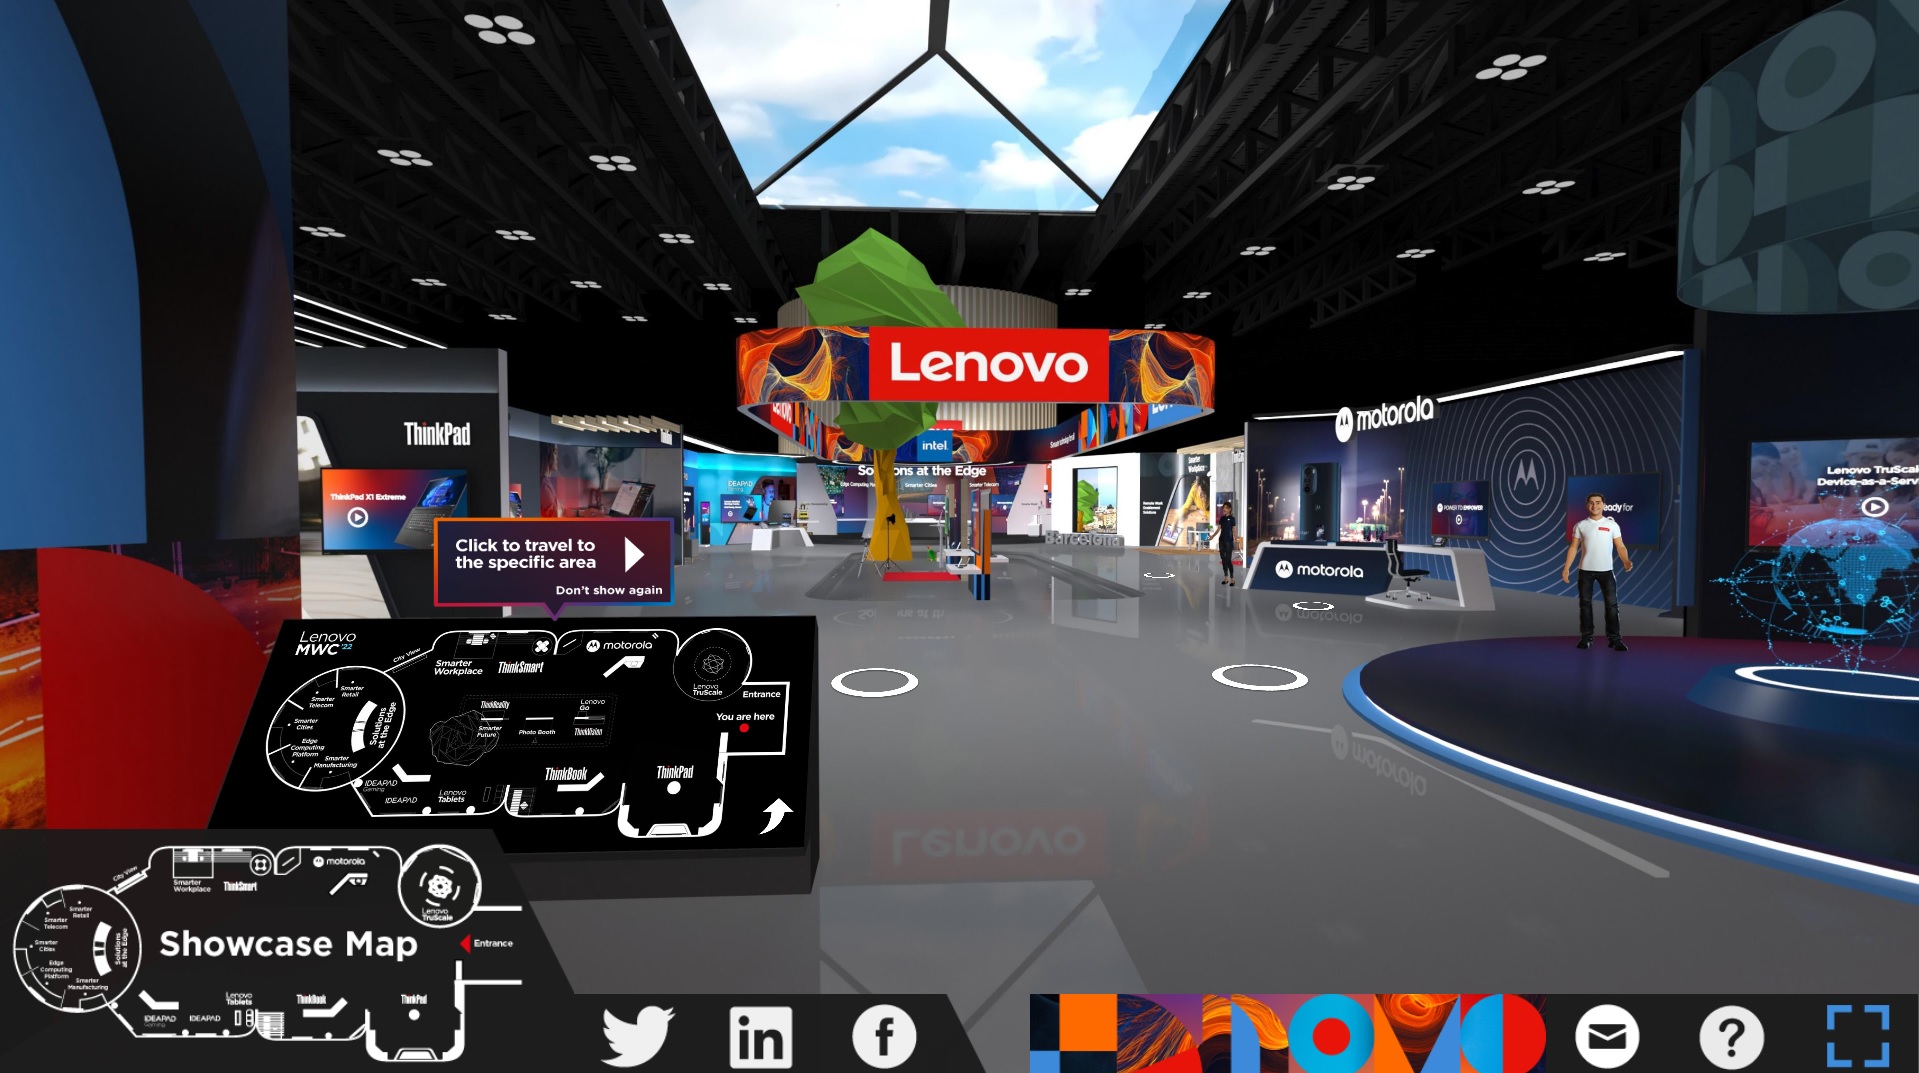 [MWC 2022] Lenovo presenta soluciones para impulsar el mundo híbrido